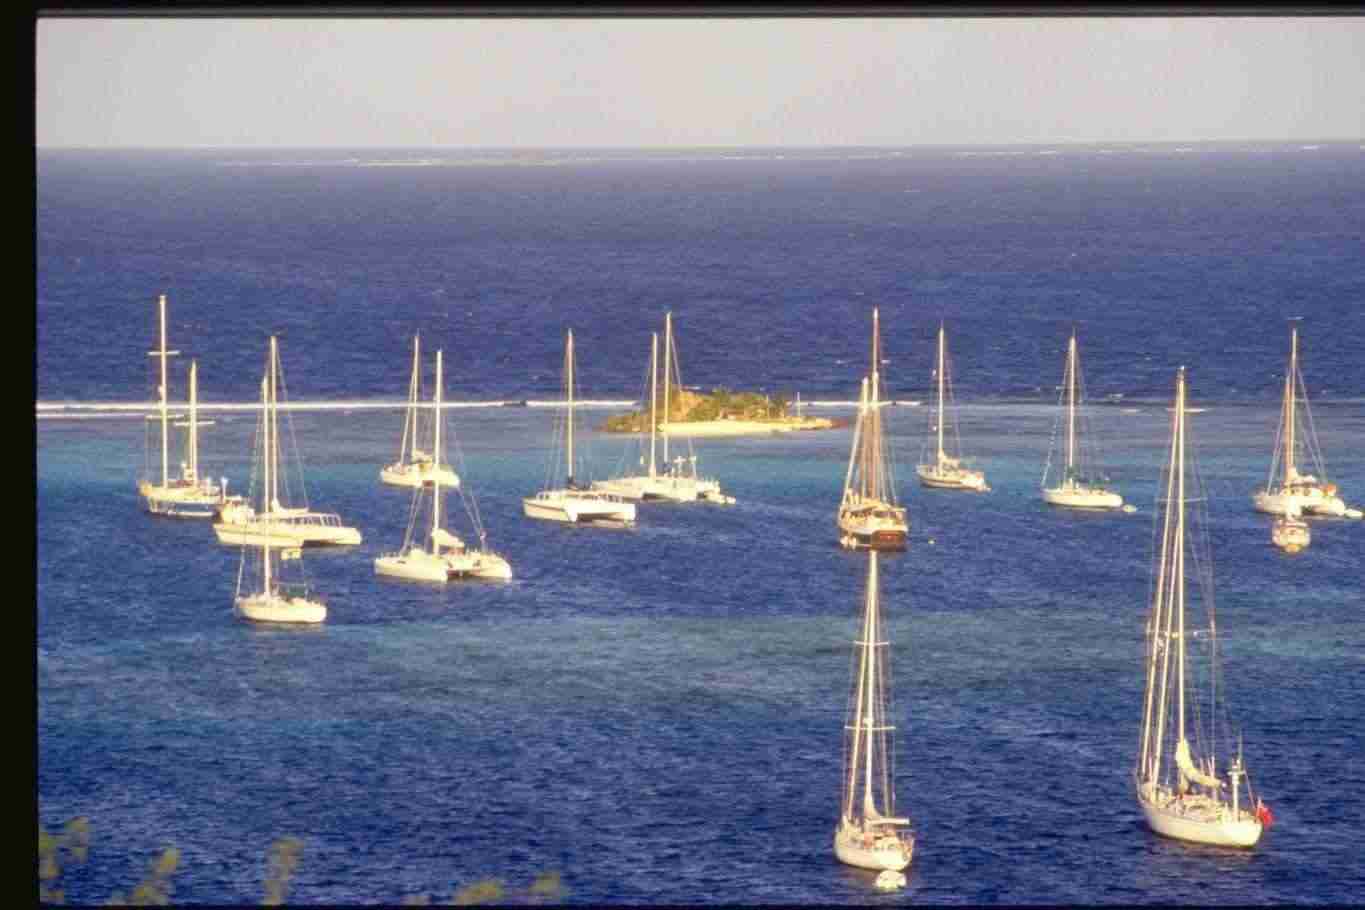 Caraibi in barca a vela Agosto 2018